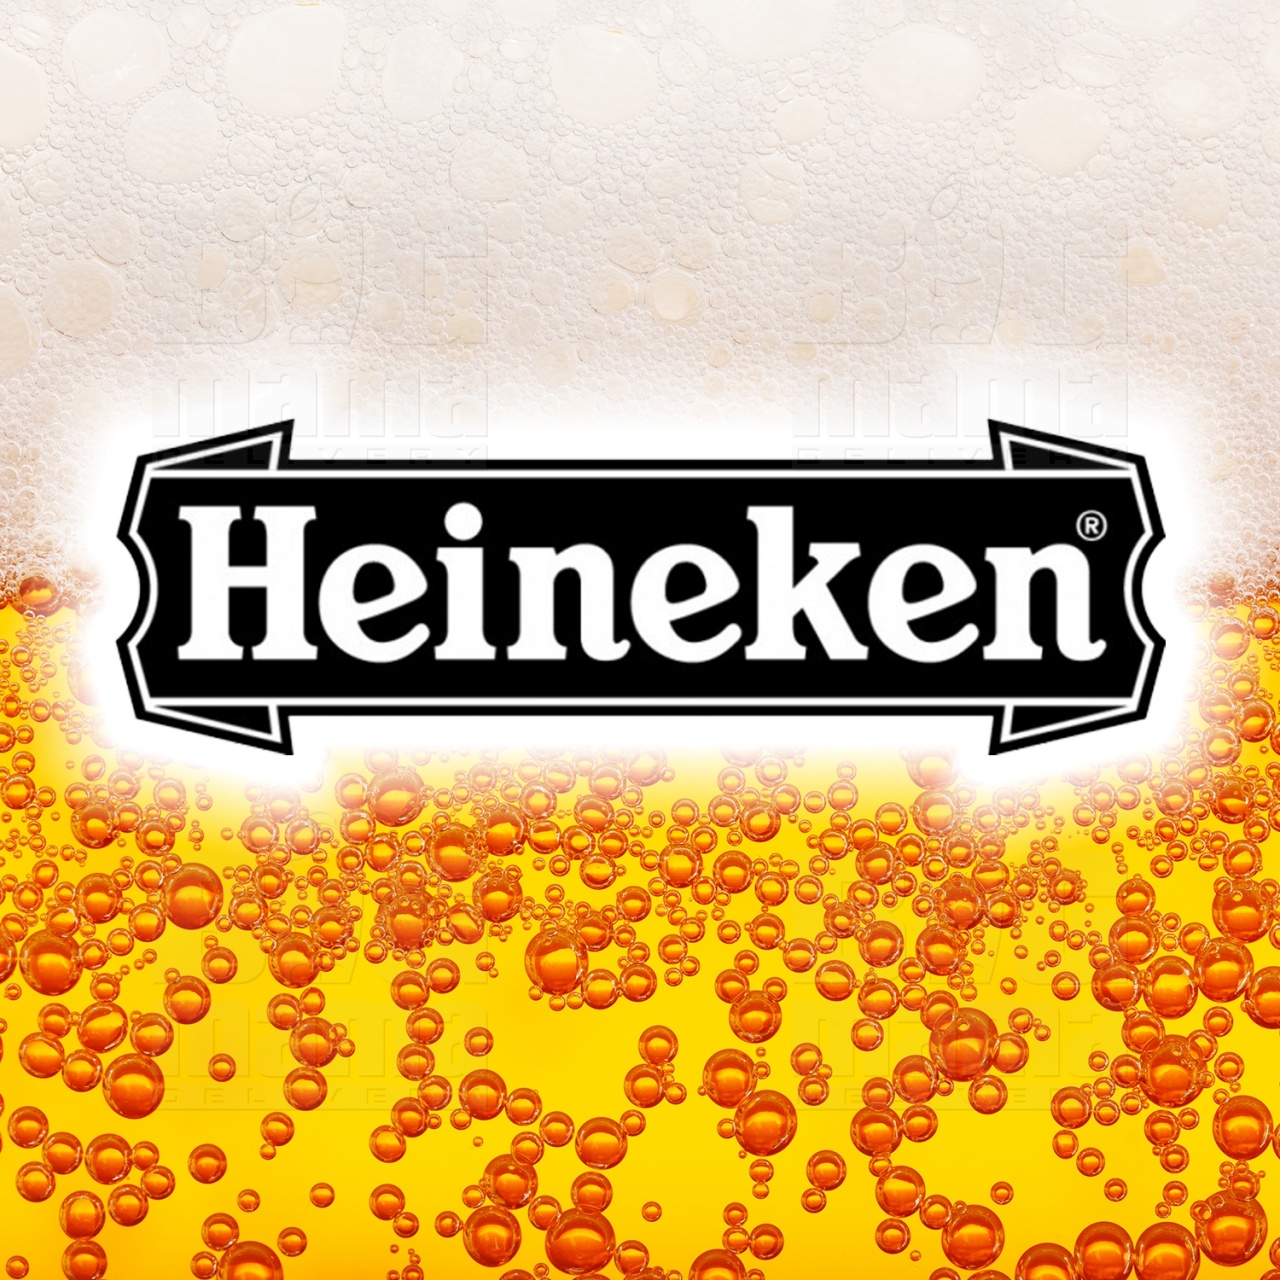 Product #162 image - Heineken beer